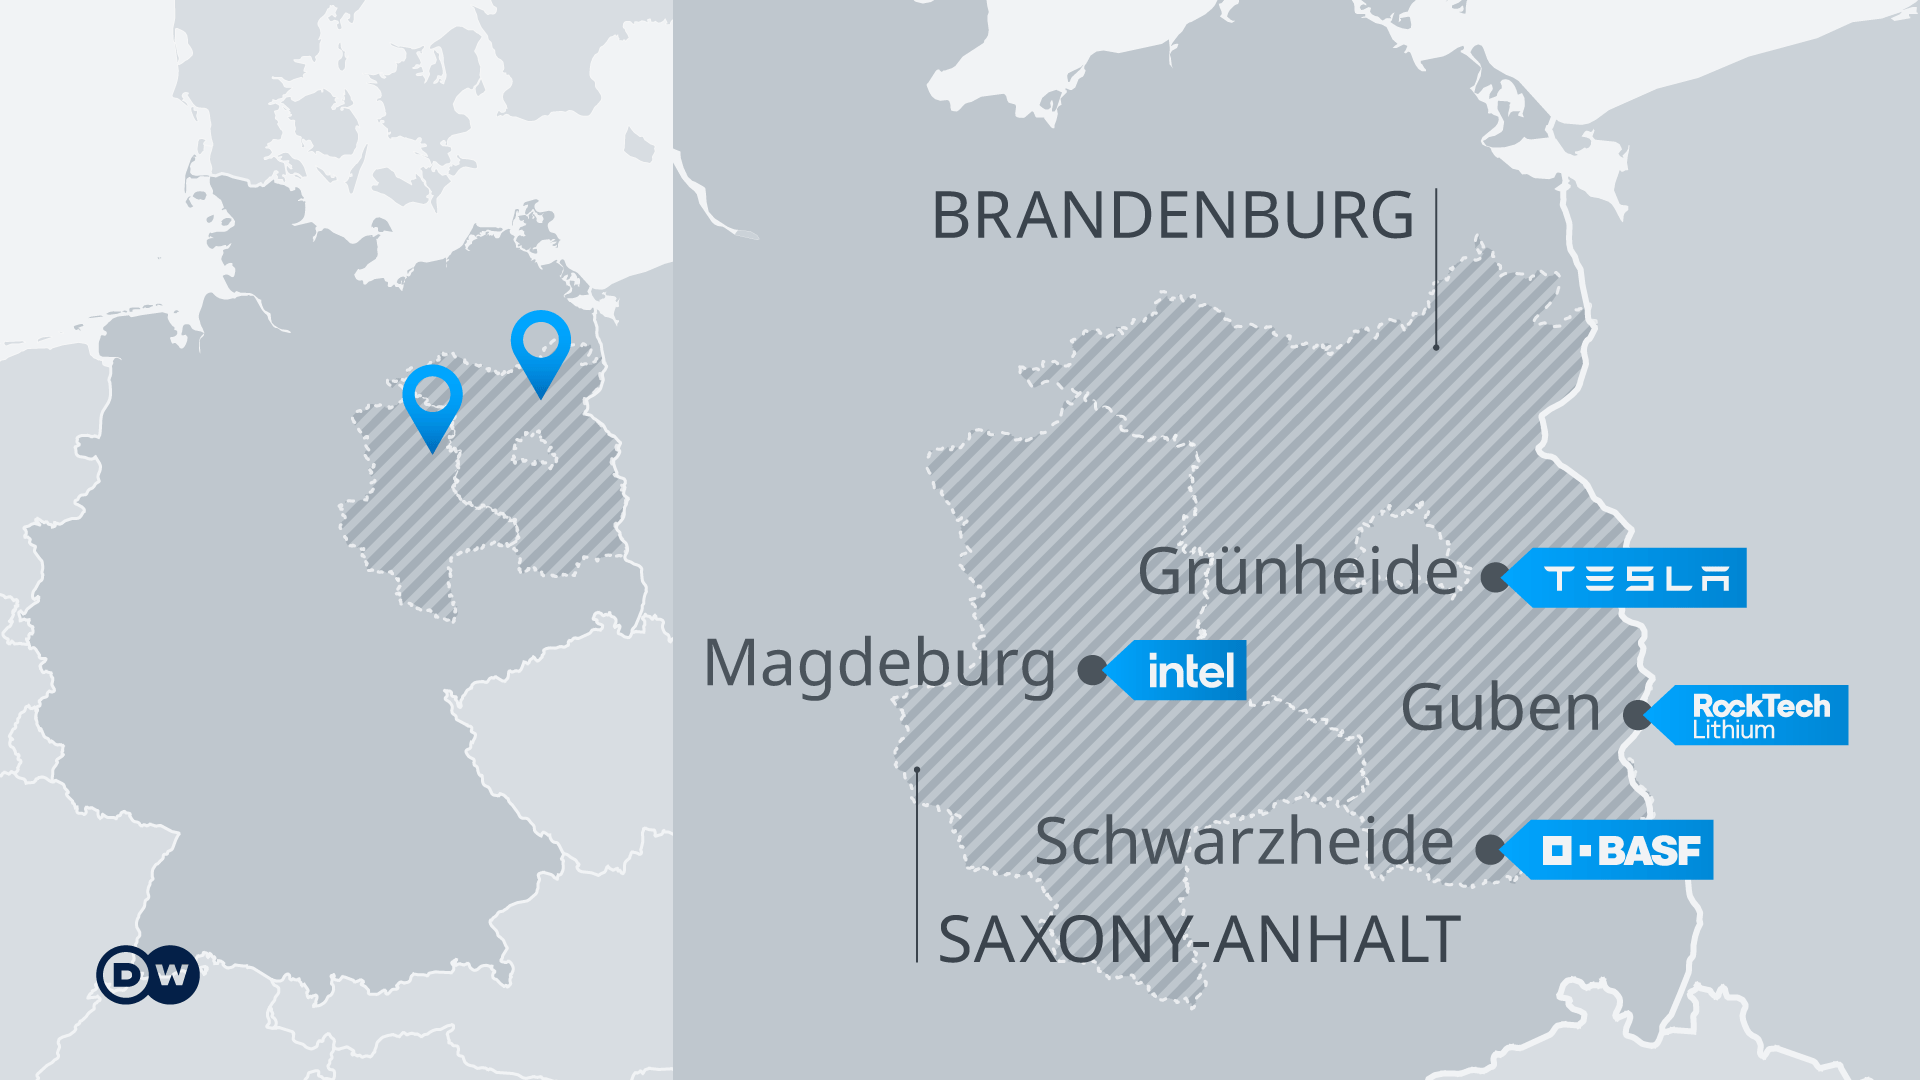 Lugares de inversión de Alemania del Este